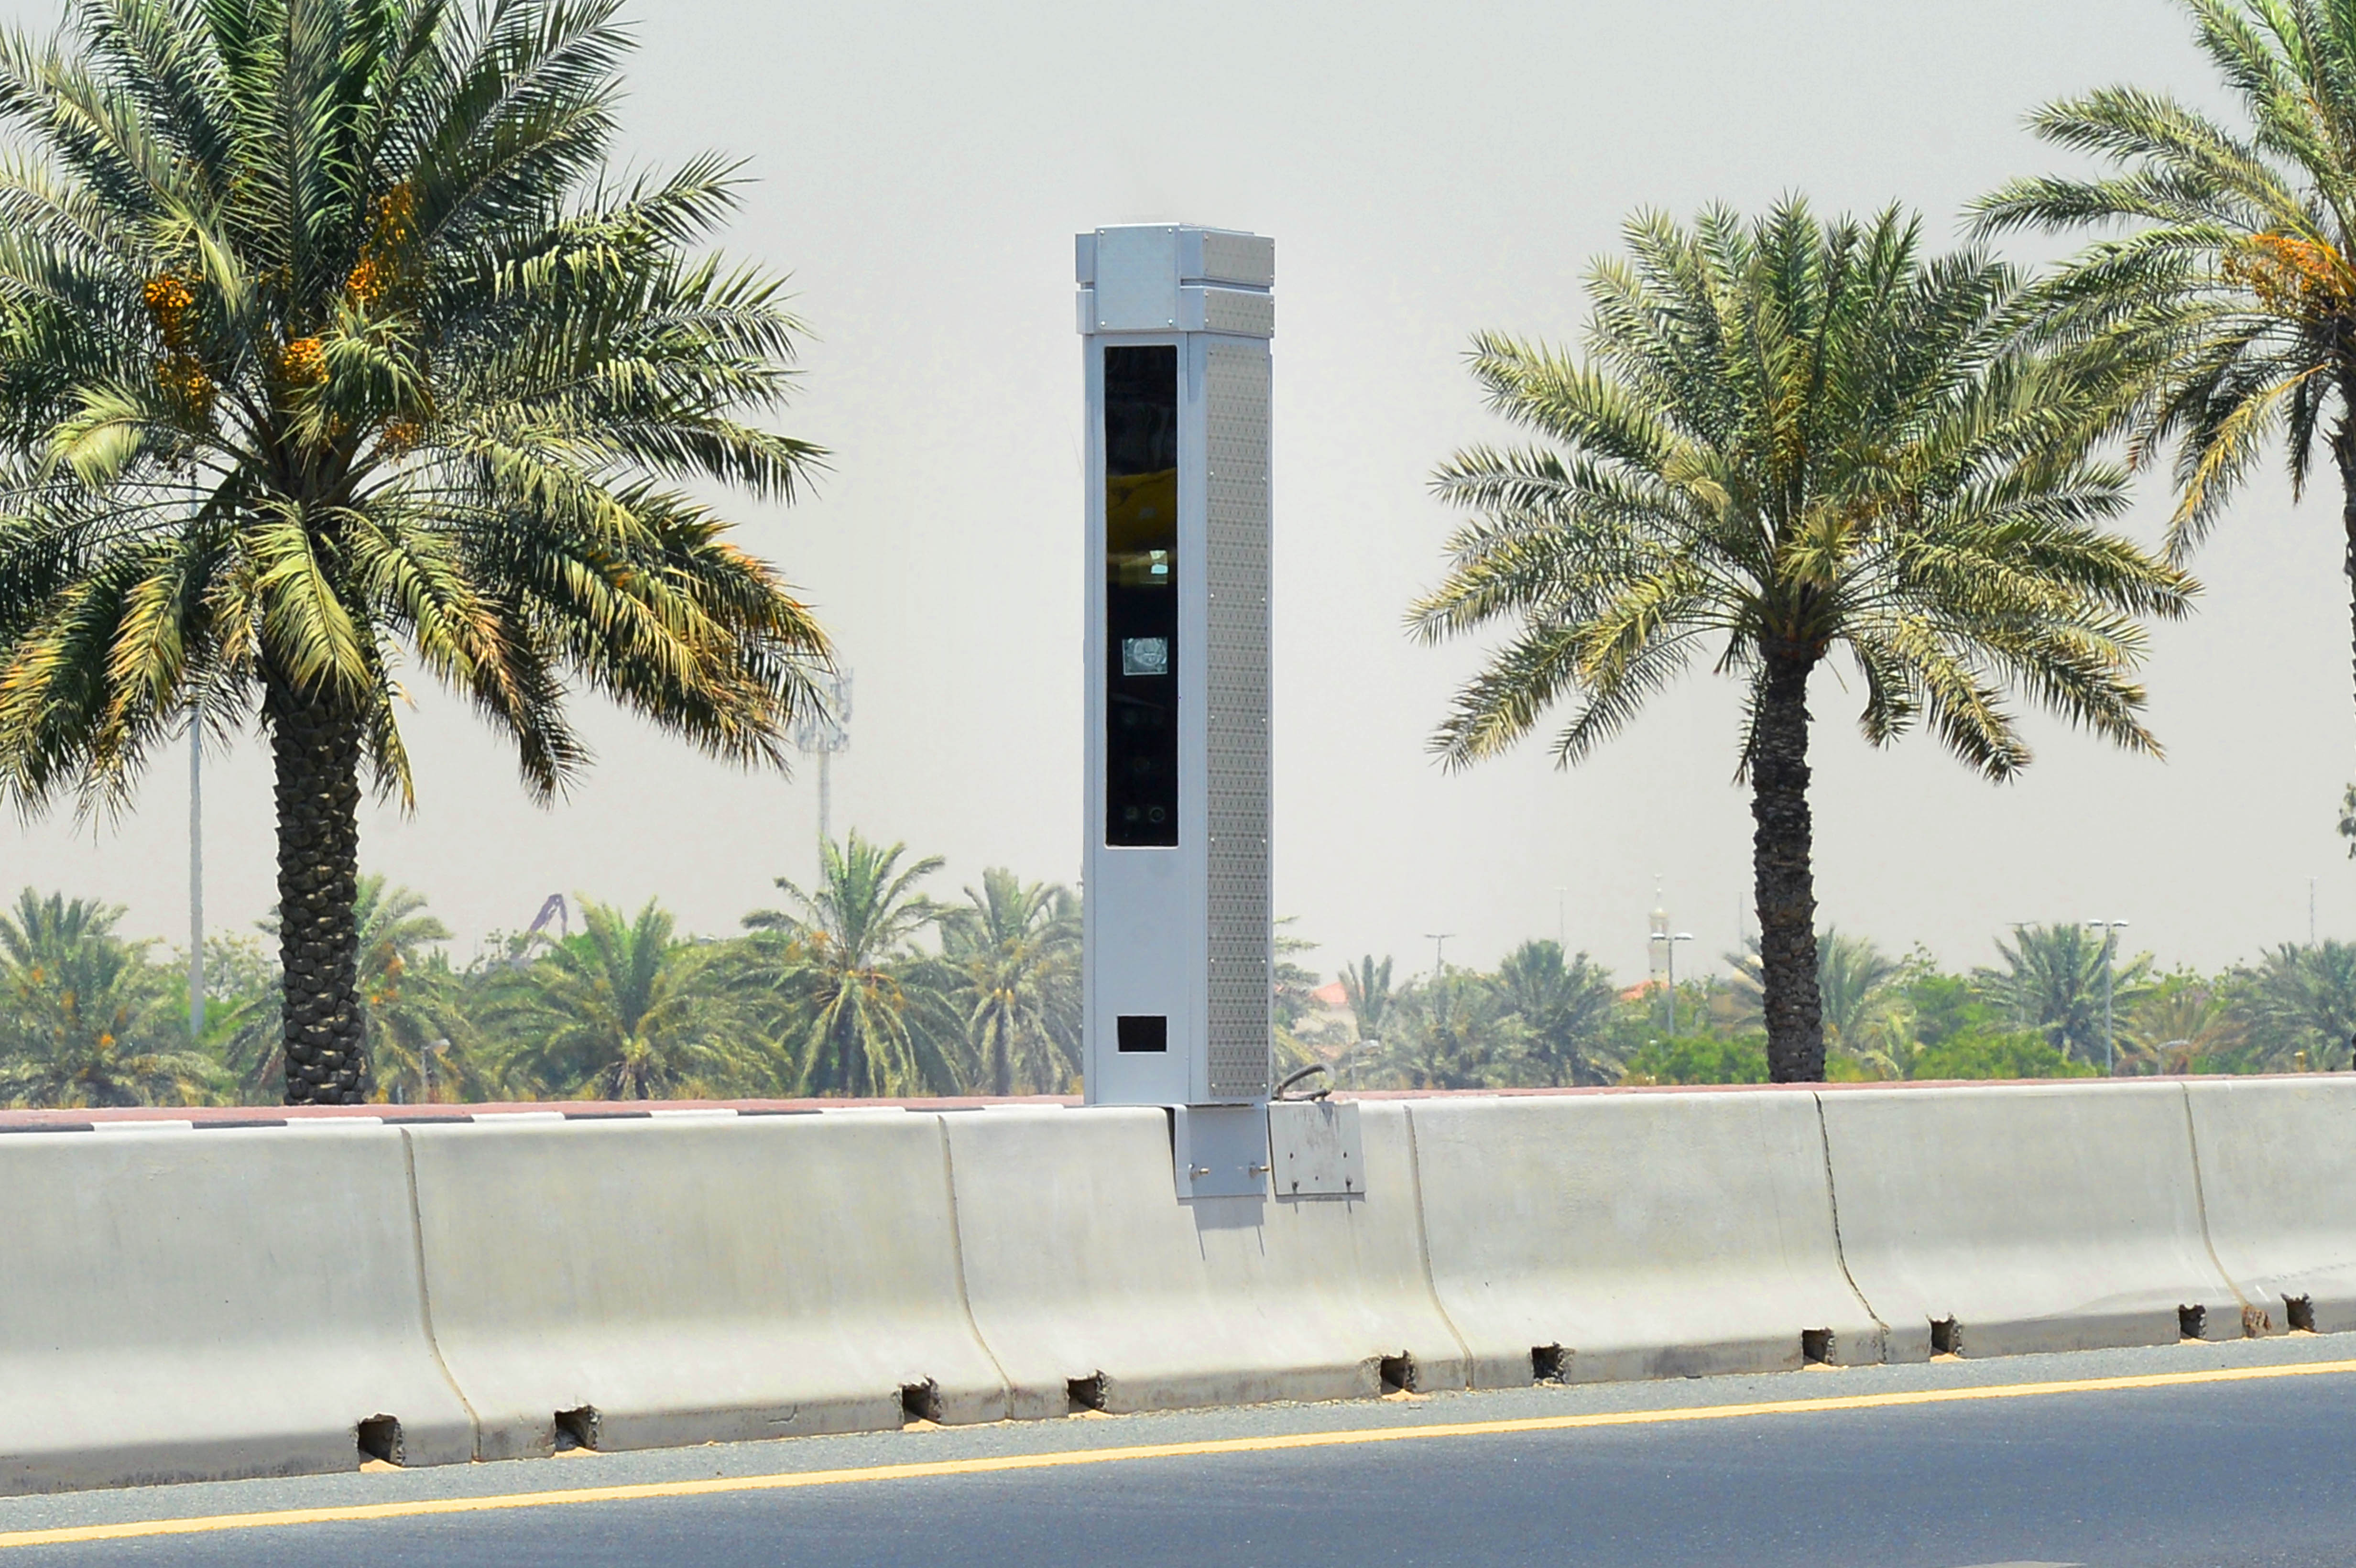 ‫تفعيل أجهزة الضبط المروري خلال فترة التعقيم الوطني في الشارقة ‬